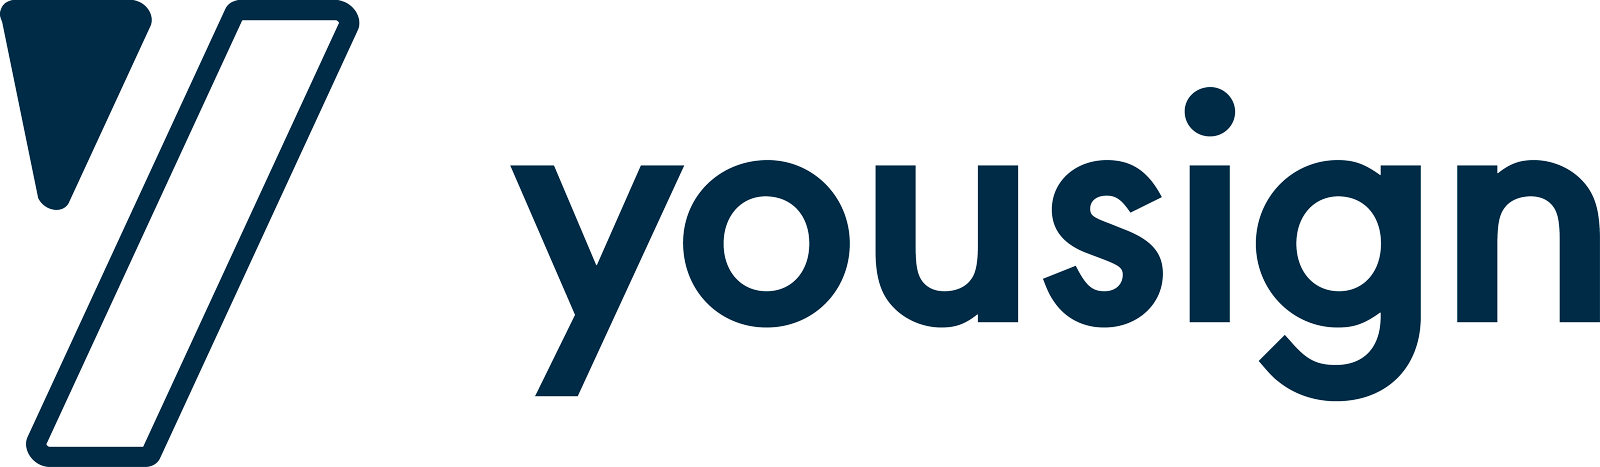 yousign.com logo